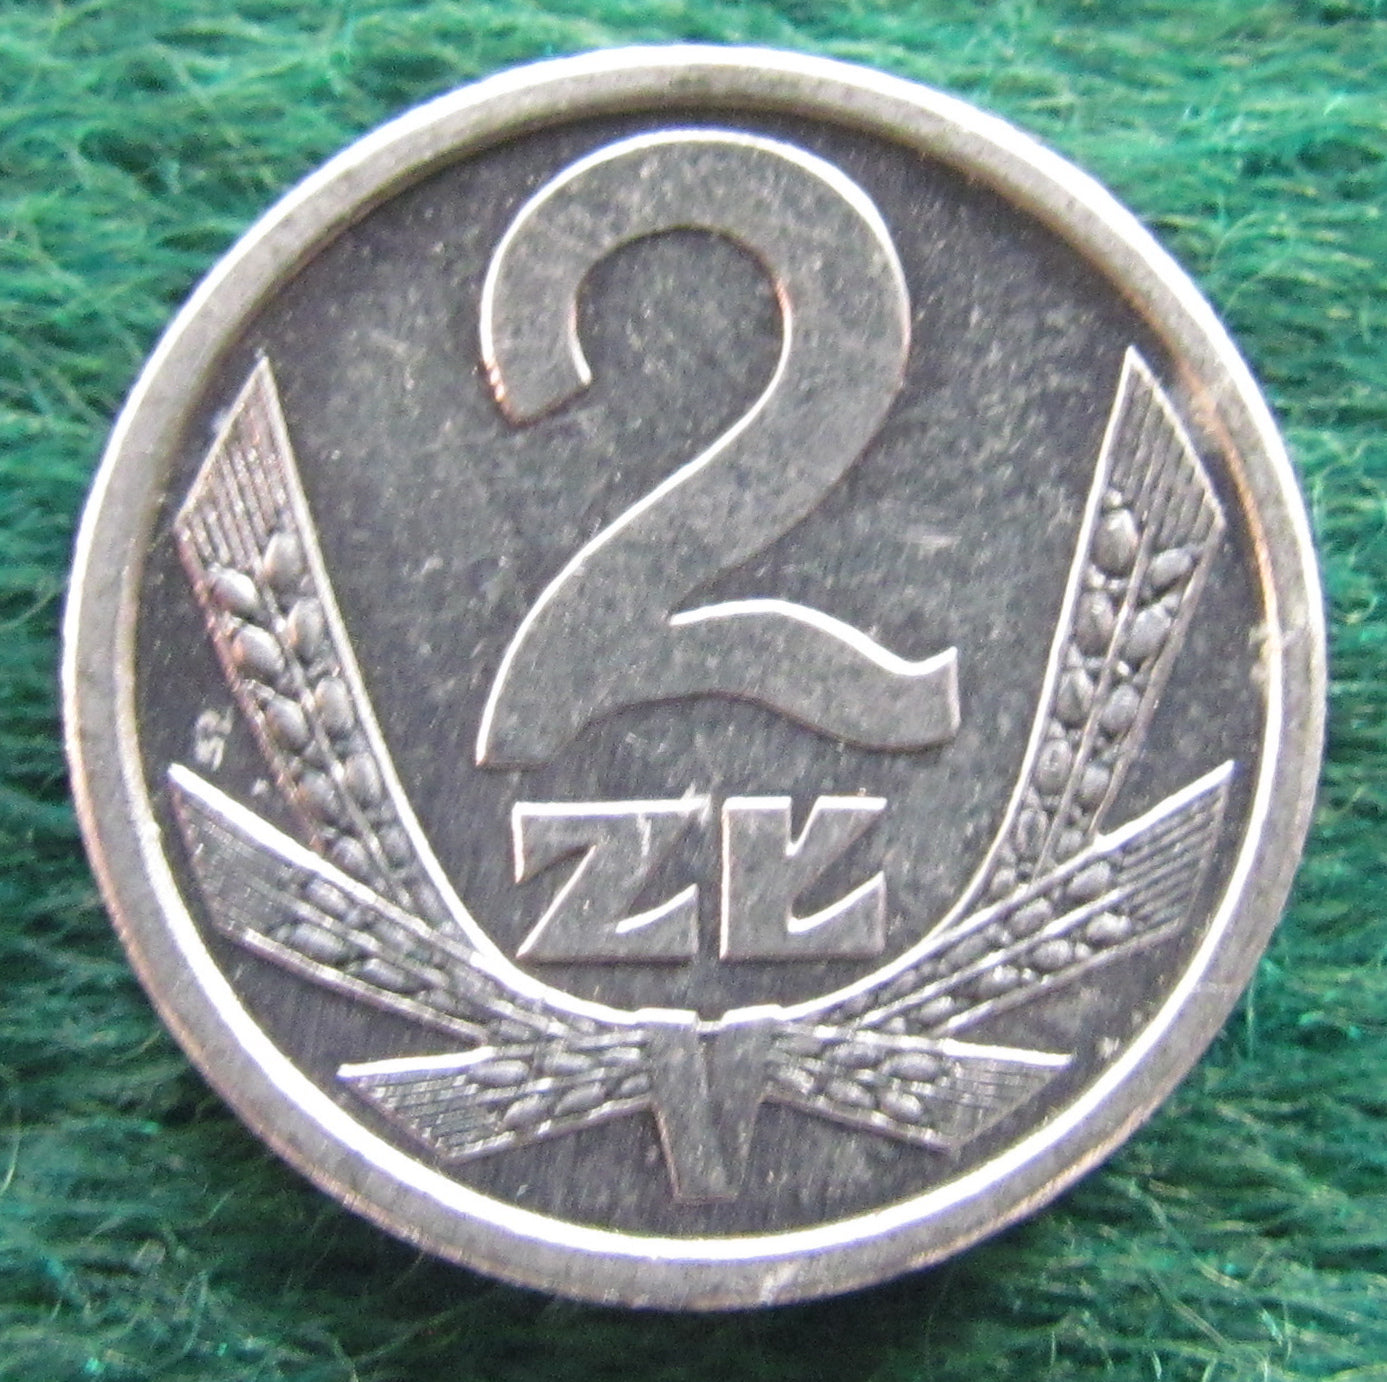 Poland 1989 2 Zlote Coin - Circulated